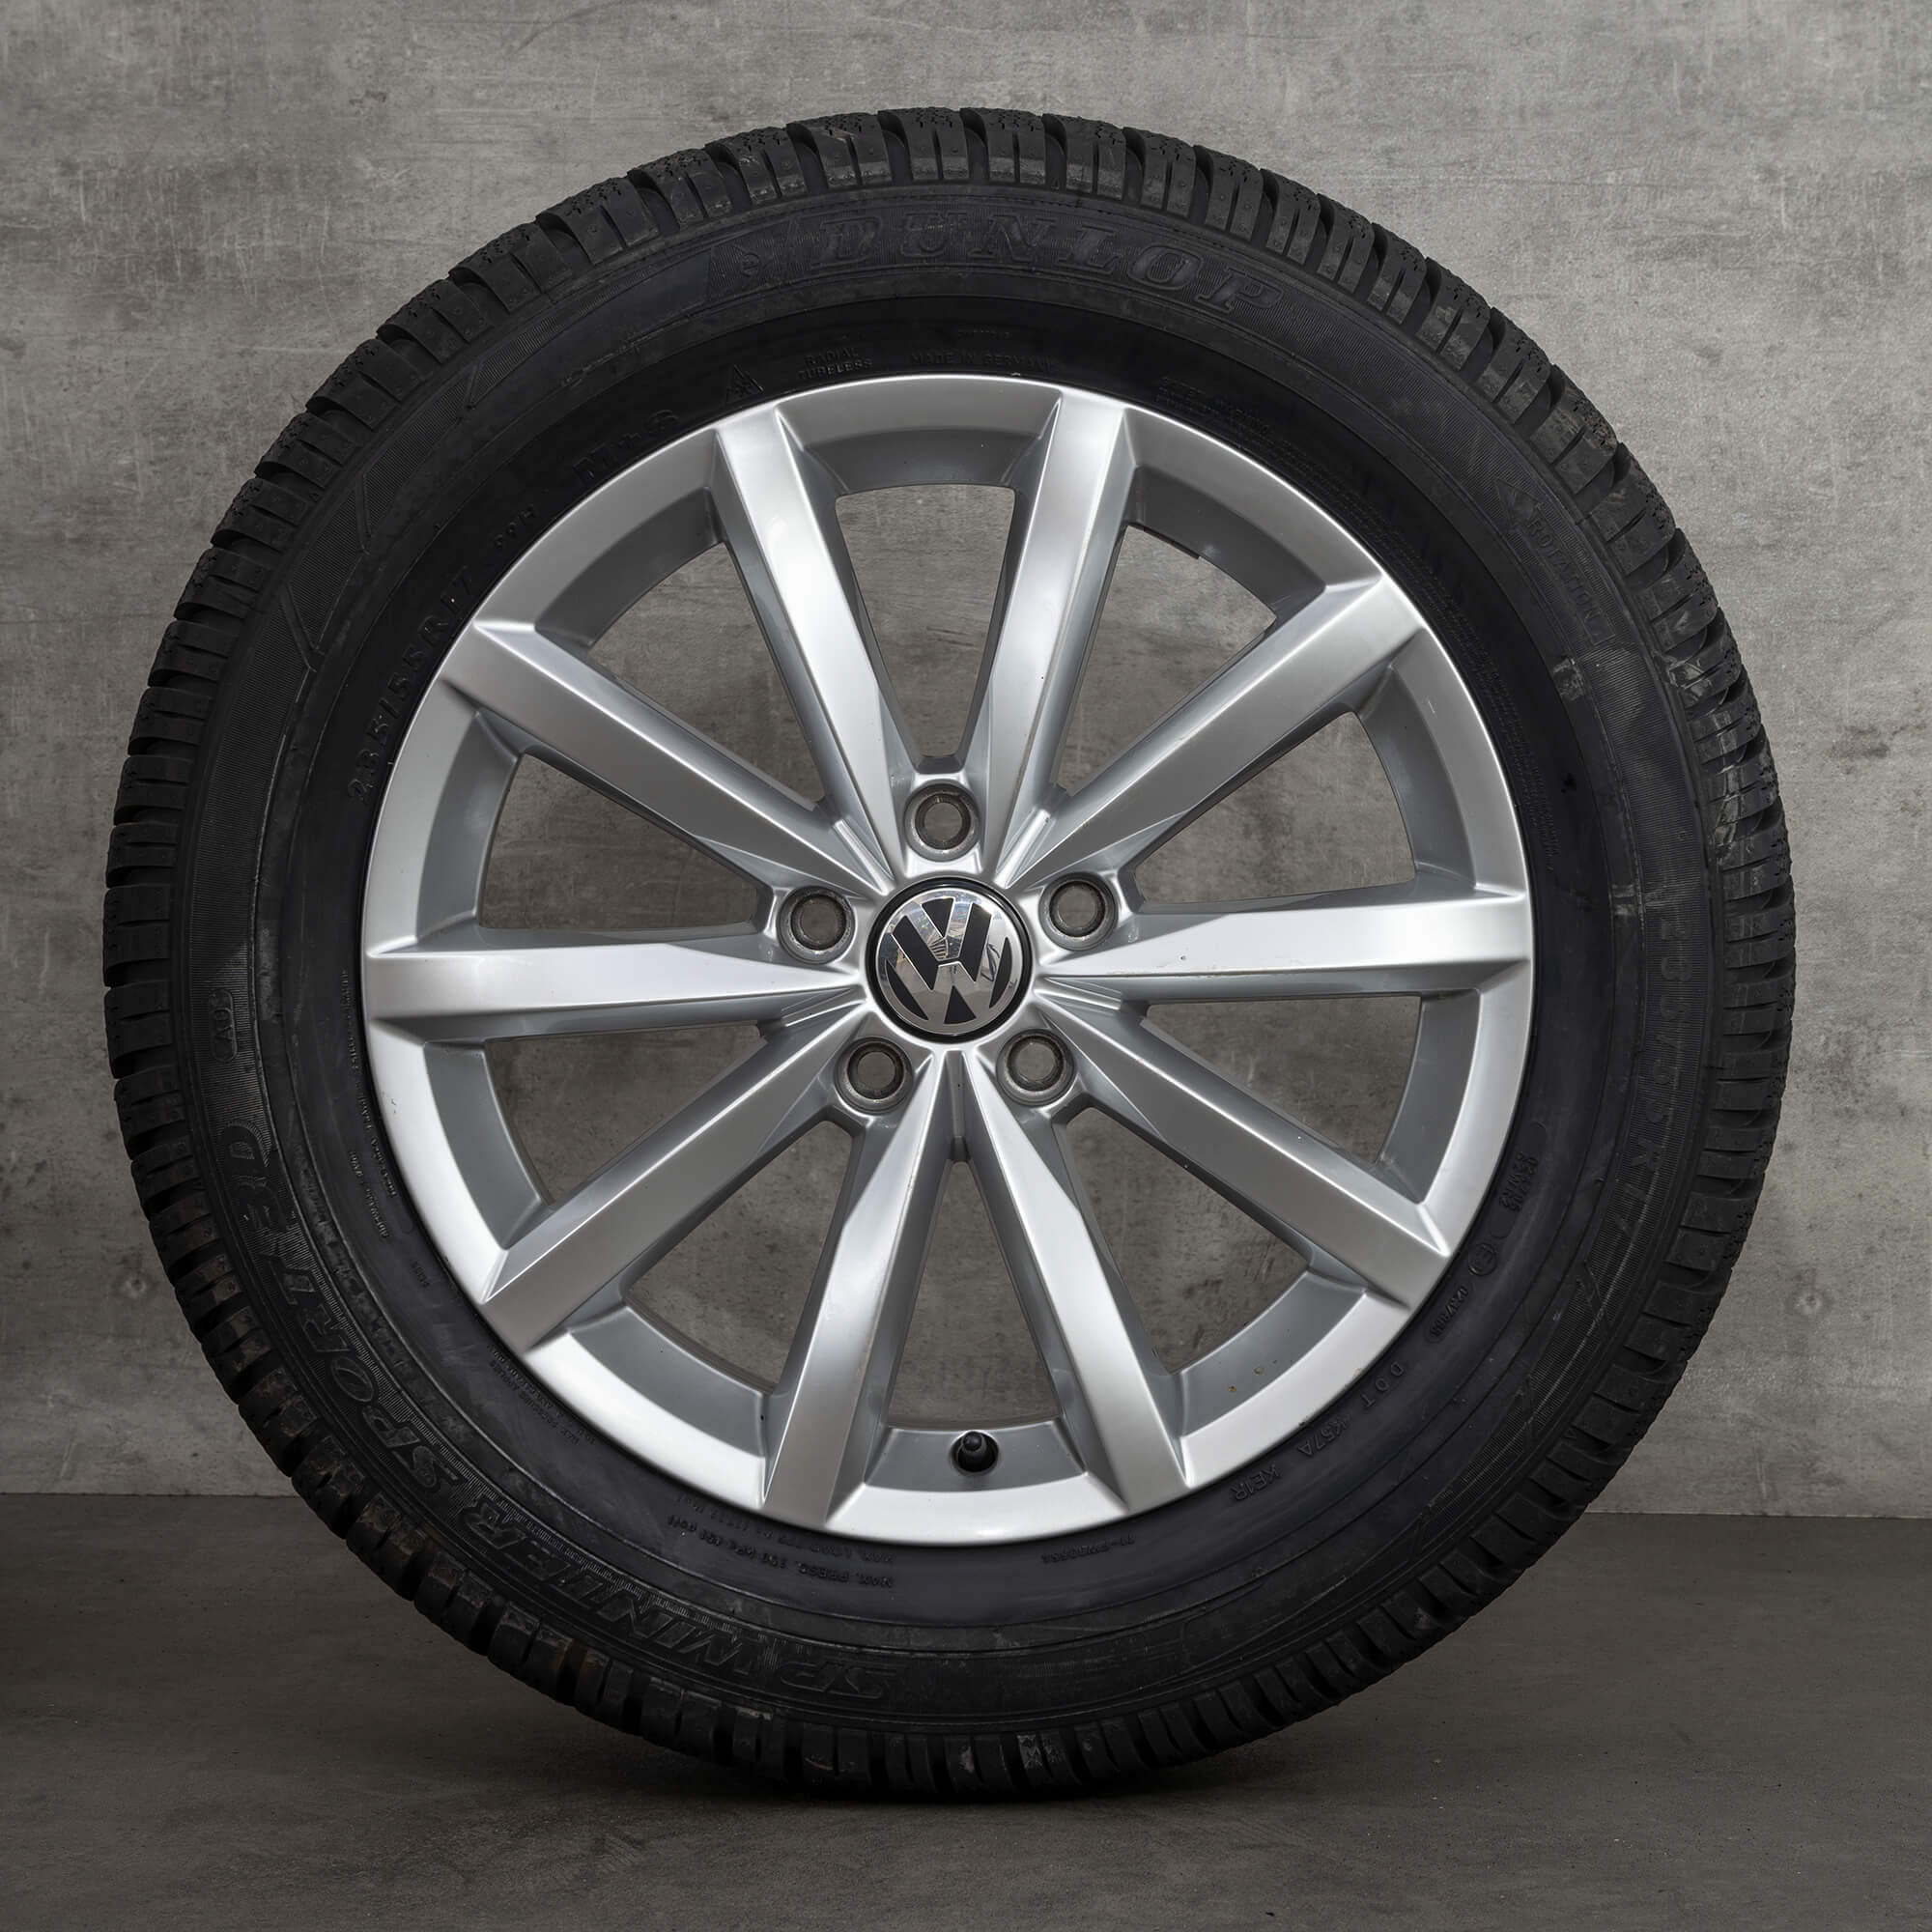 VW llantas de 17 pulgadas Tiguan 5N Novara neumáticos de invierno ruedas de